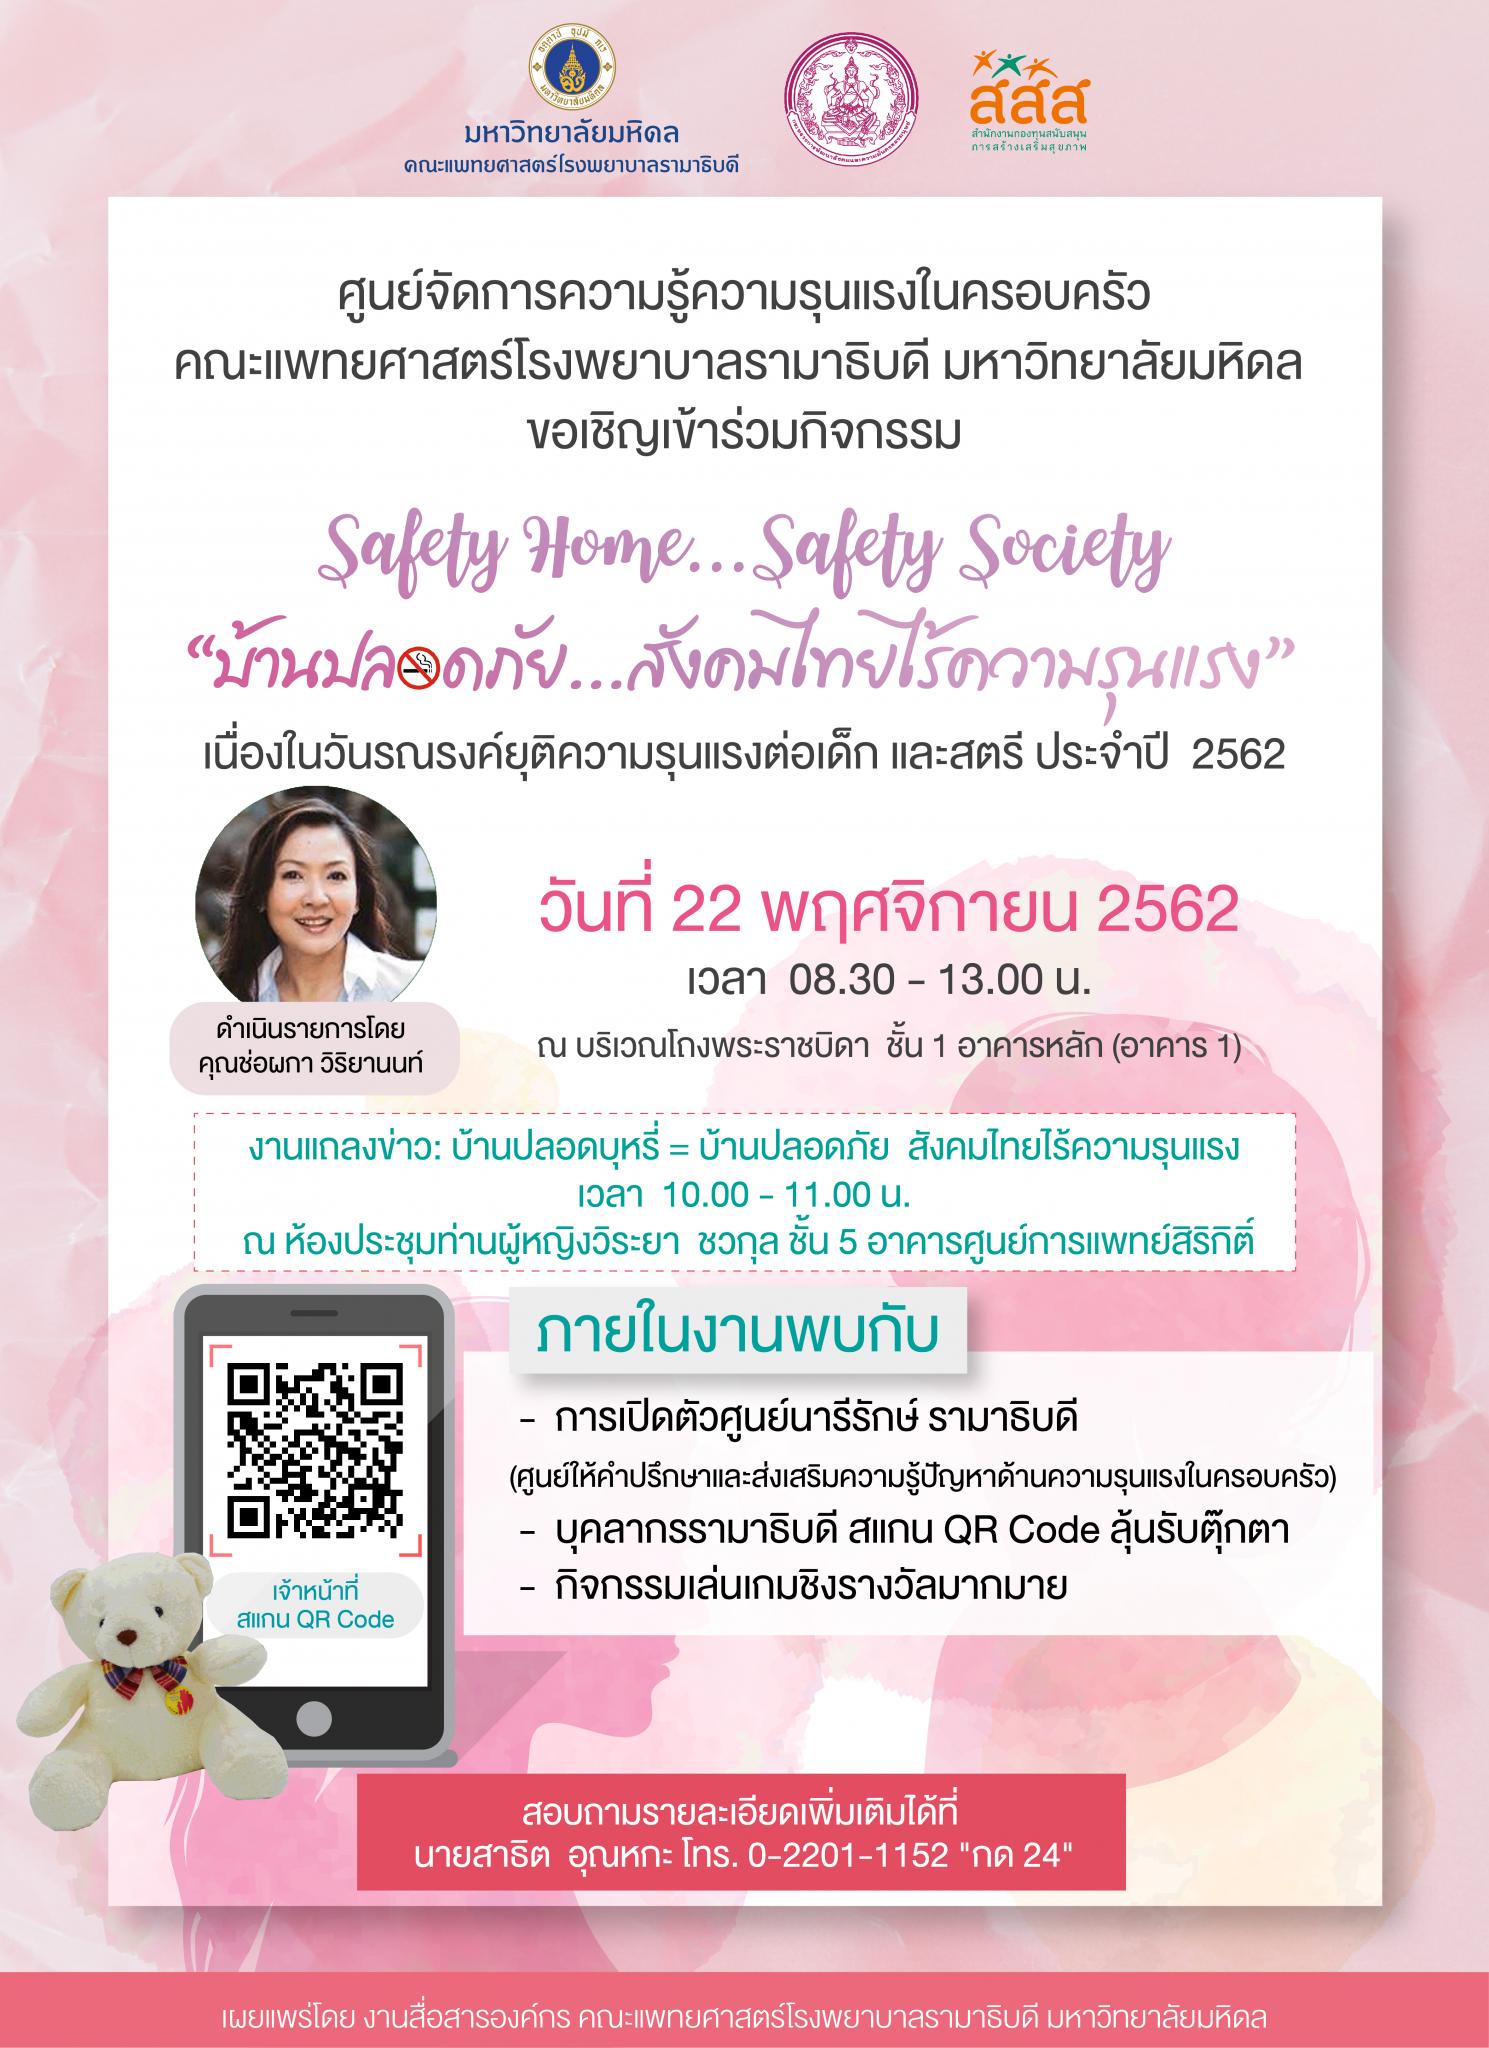 ขอเชิญเข้าร่วมกิจกรรม Safety Home...Safety Society บ้านปลอดภัย...สังคมไทยไร้ความรุนแรง เนื่องในวันรณรงค์ยุติความรุนแรงต่อเด็ก และสตรี ประจำปี 2562